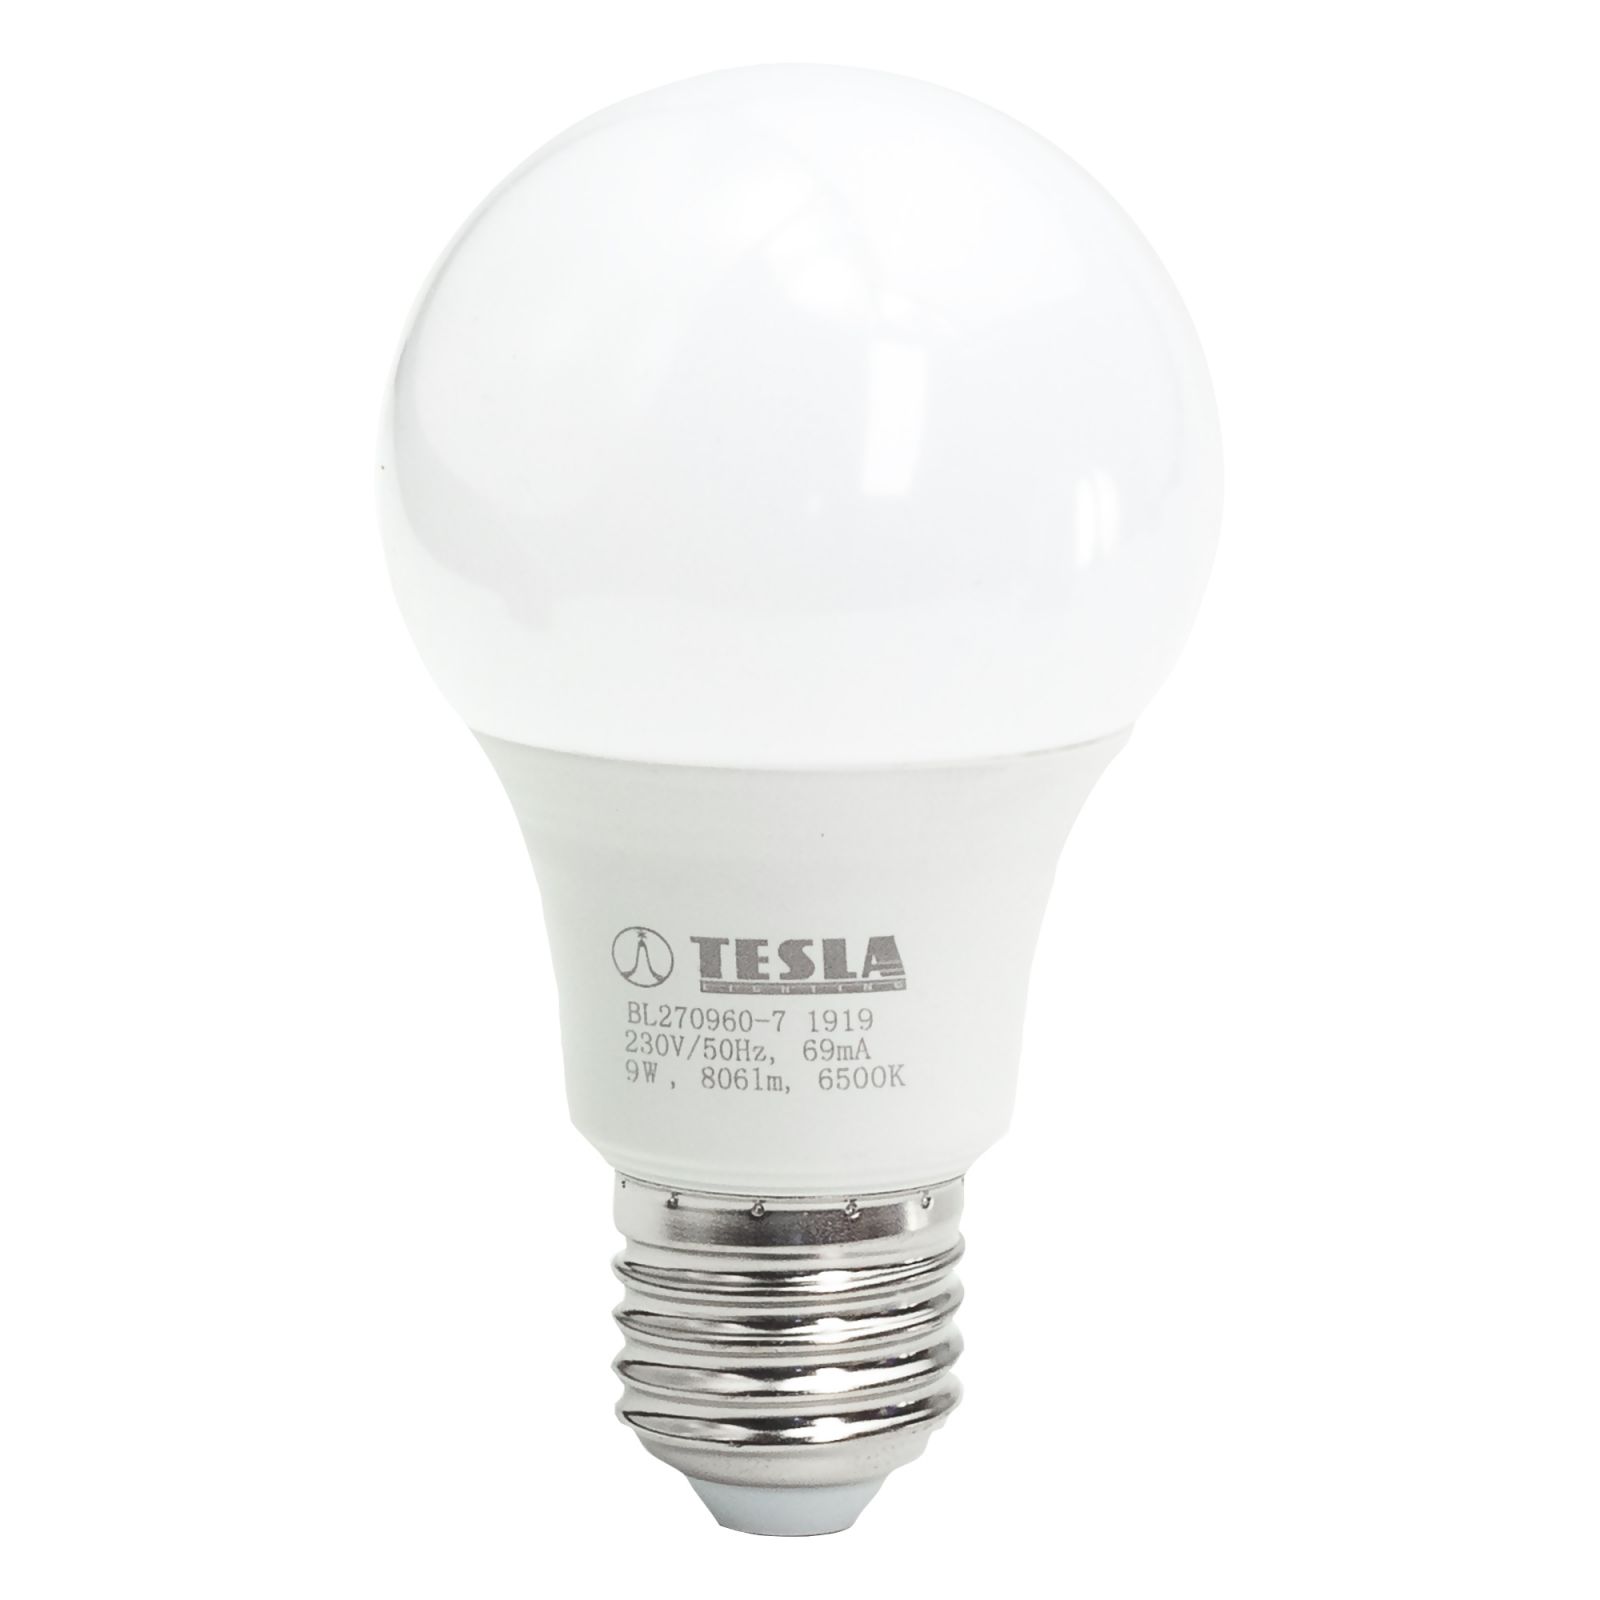 Tesla - LED žárovka BULB E27, 9W, 230V, 806lm, 25 000h, 6500K studená bílá, 220st Tesla Lighting